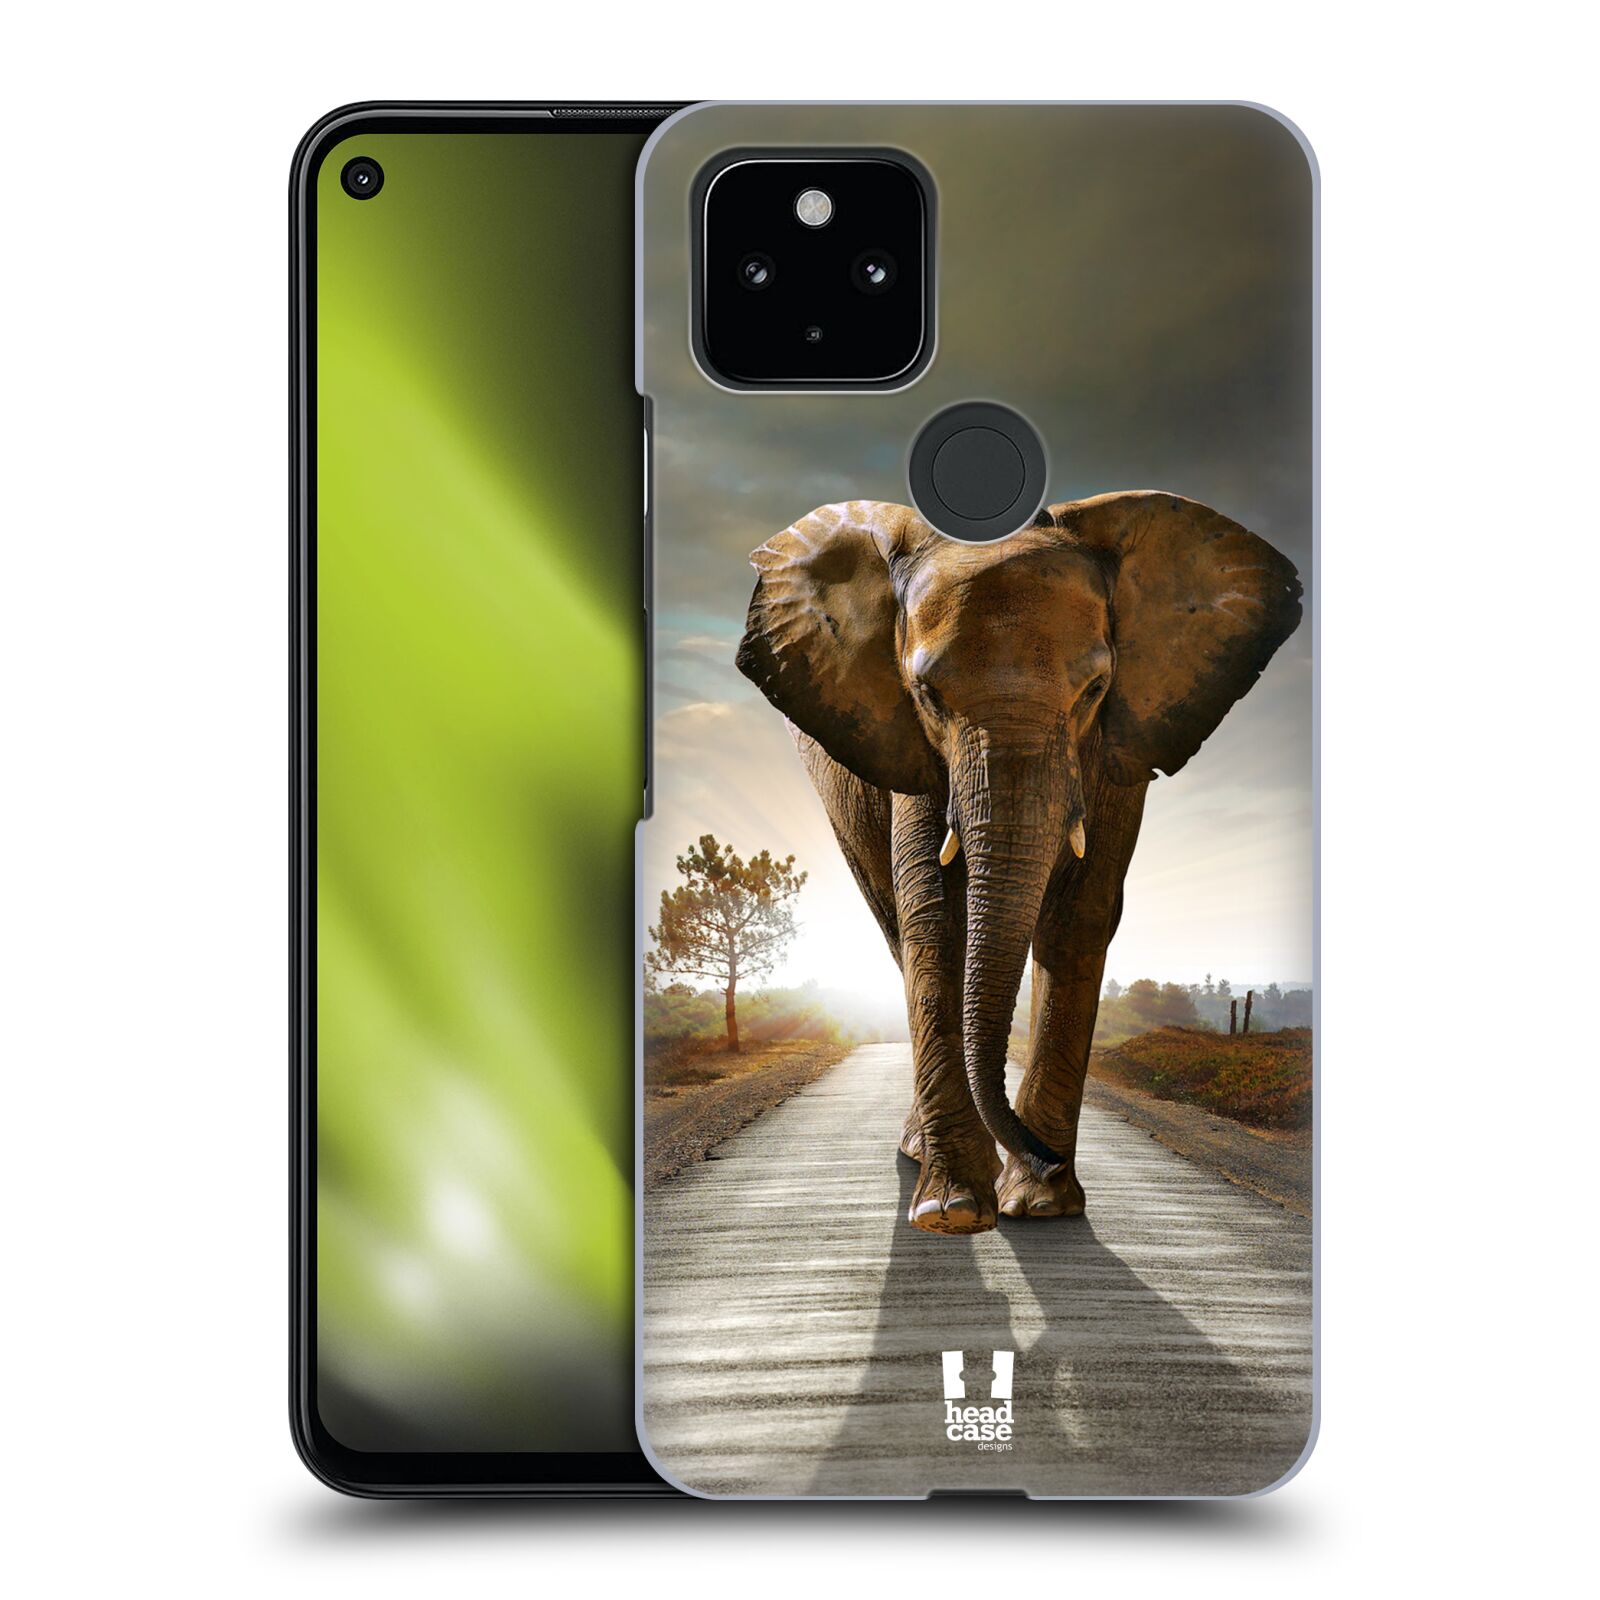 Zadní obal pro mobil Google Pixel 4a 5G - HEAD CASE - Svět zvířat kráčející slon